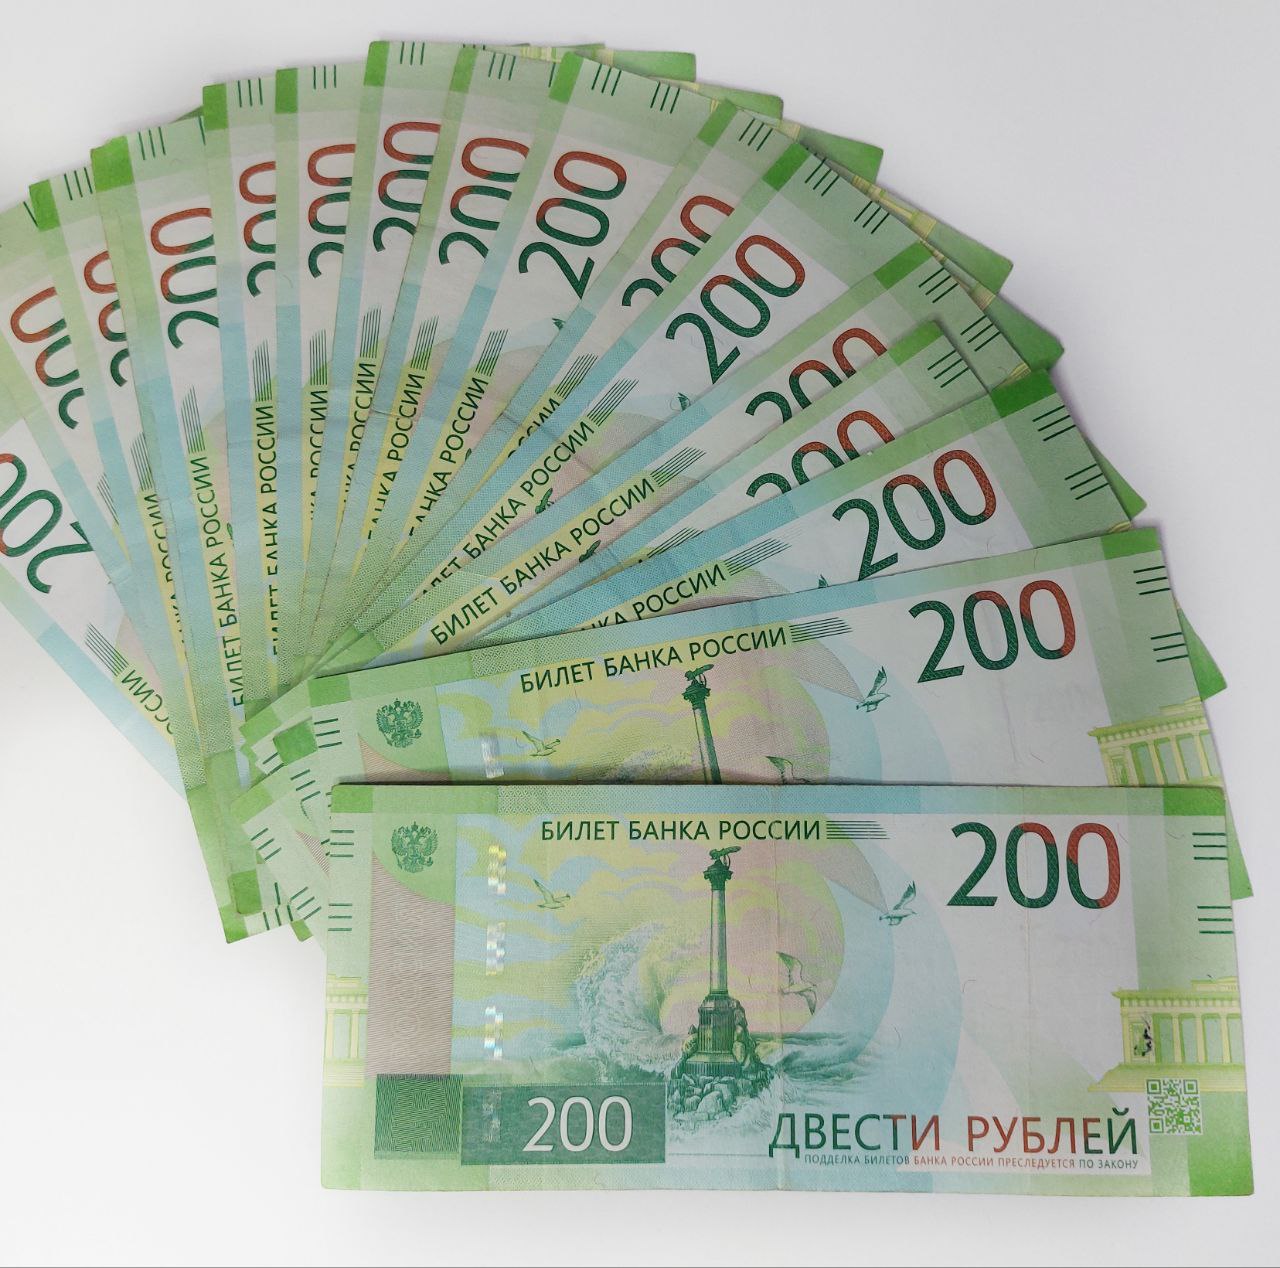 ФНС начислила рекордные суммы налогов за 2022 год - 685 7,7 млрд рублей